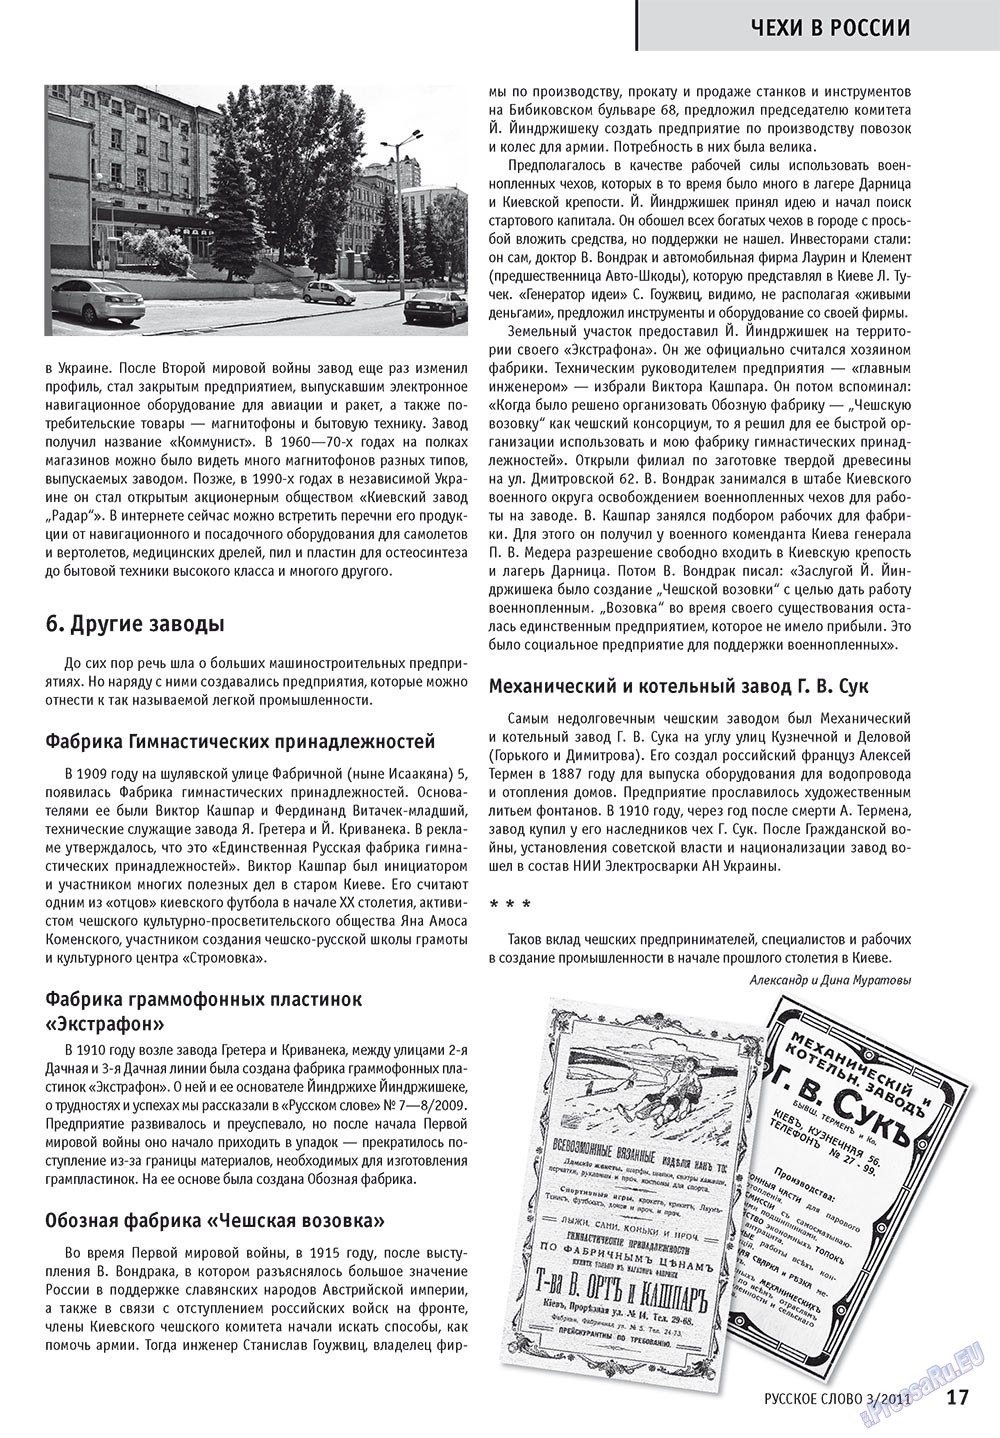 Русское слово (журнал). 2011 год, номер 3, стр. 19